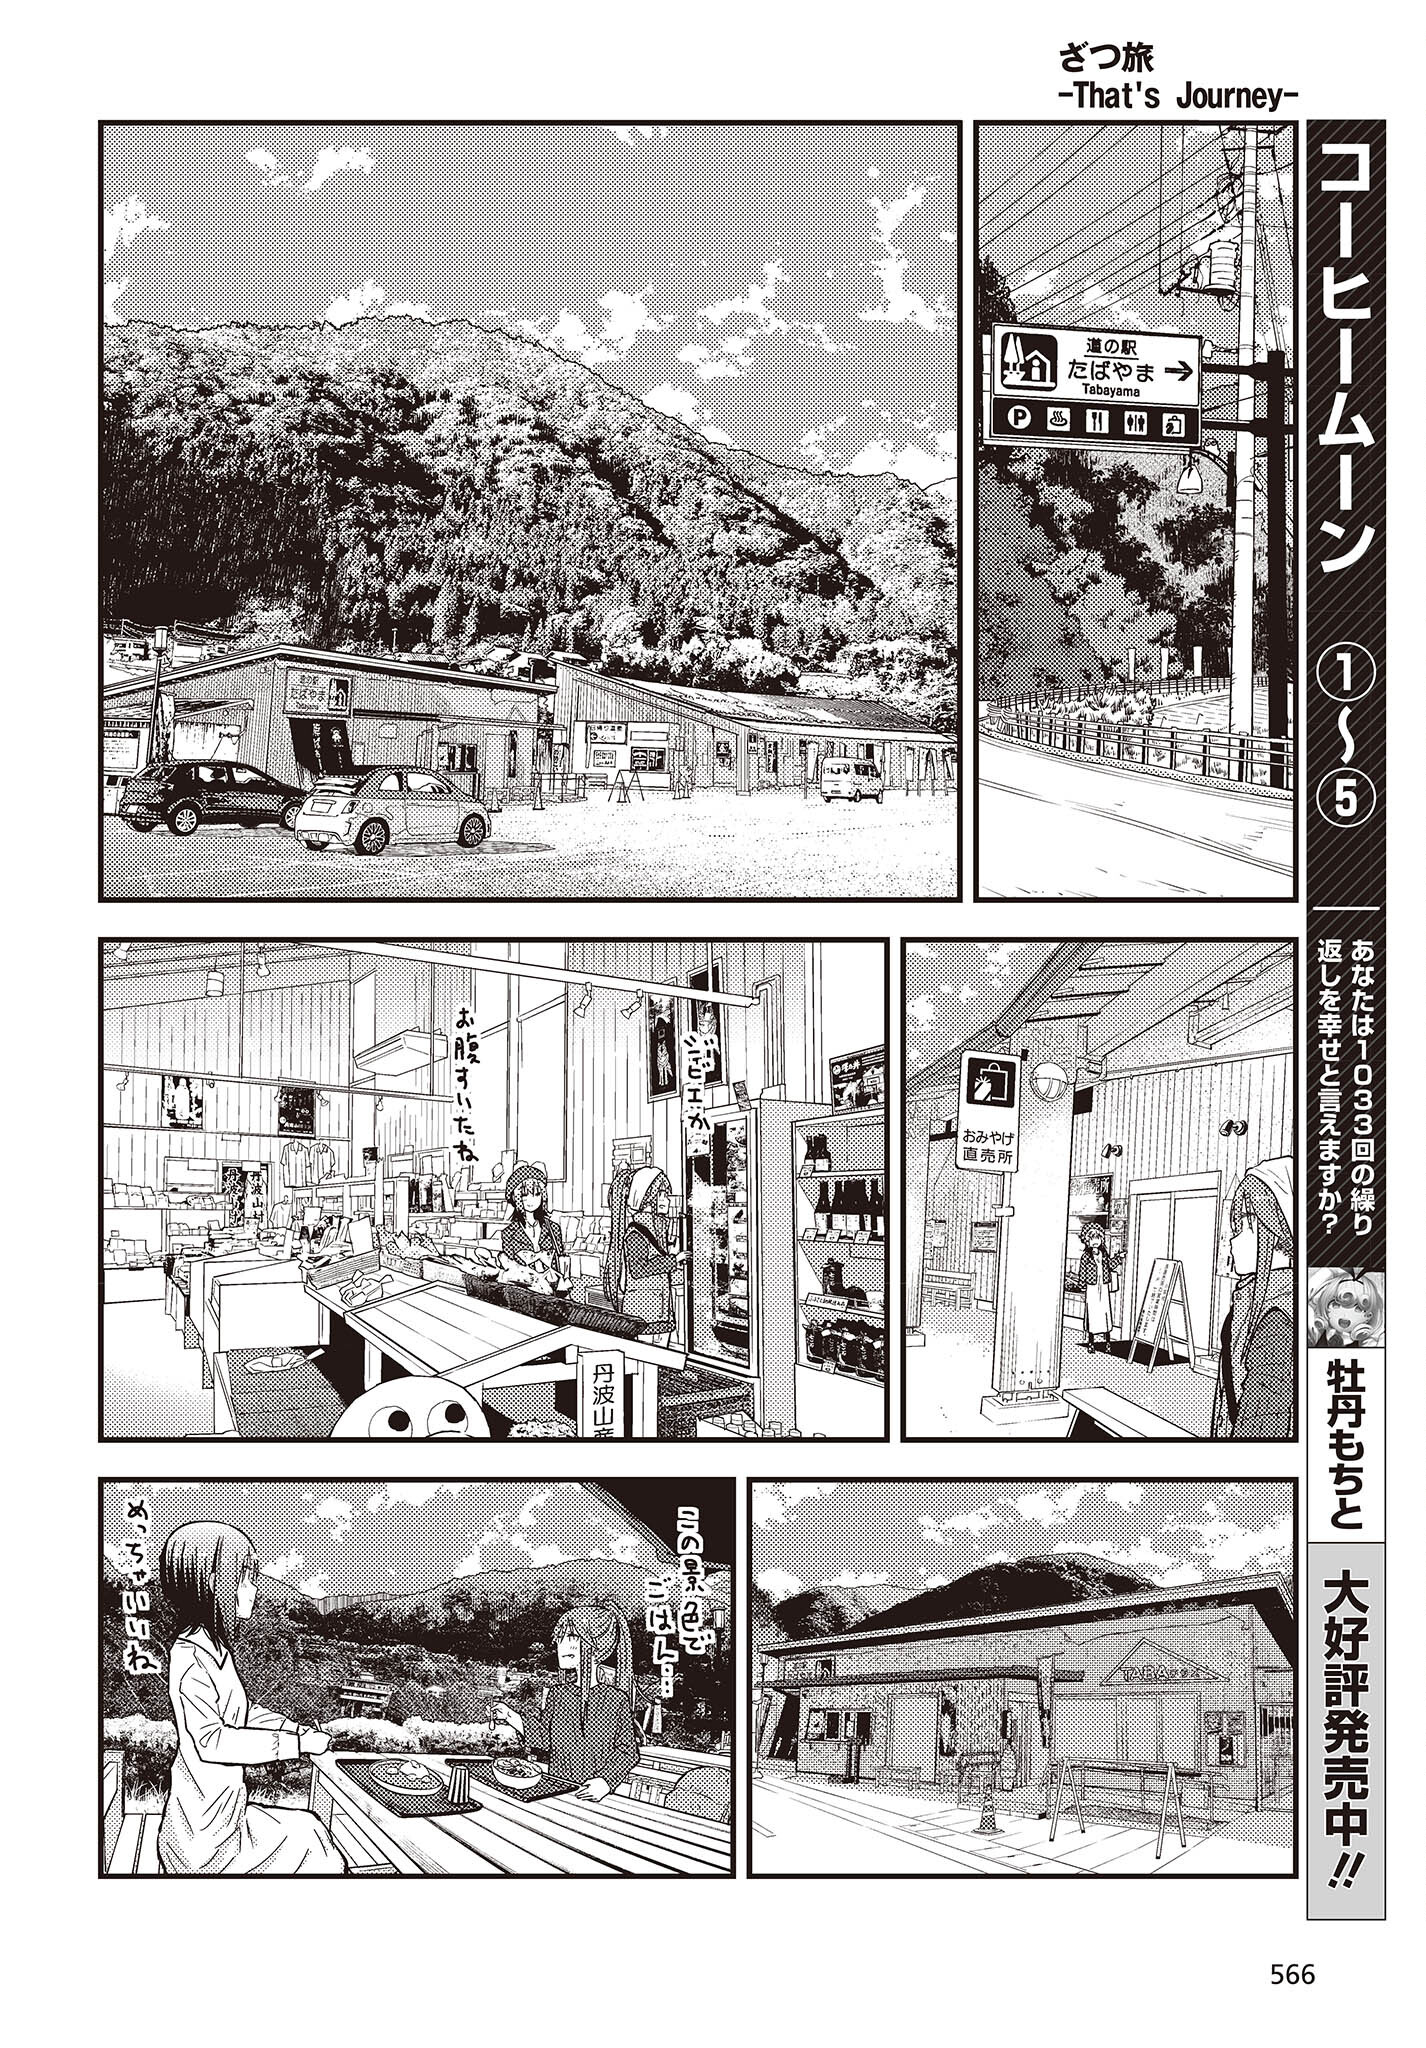 ざつ旅-That’s Journey- 第26.2話 - Page 8